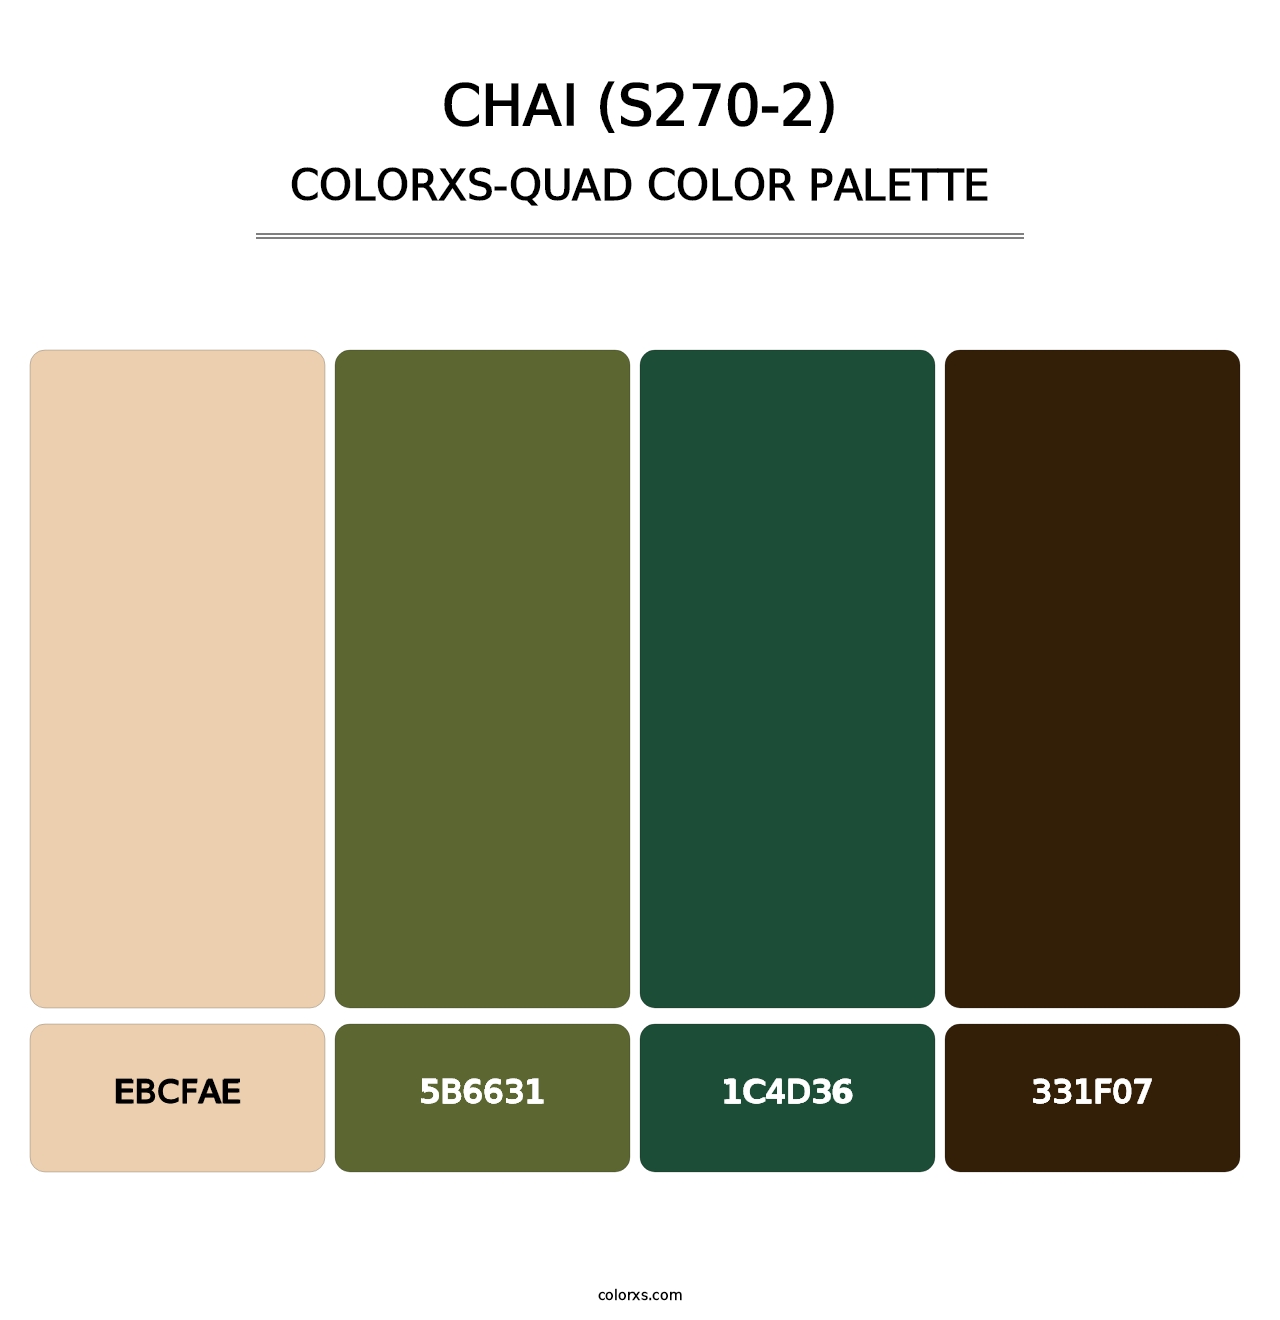 Chai (S270-2) - Colorxs Quad Palette